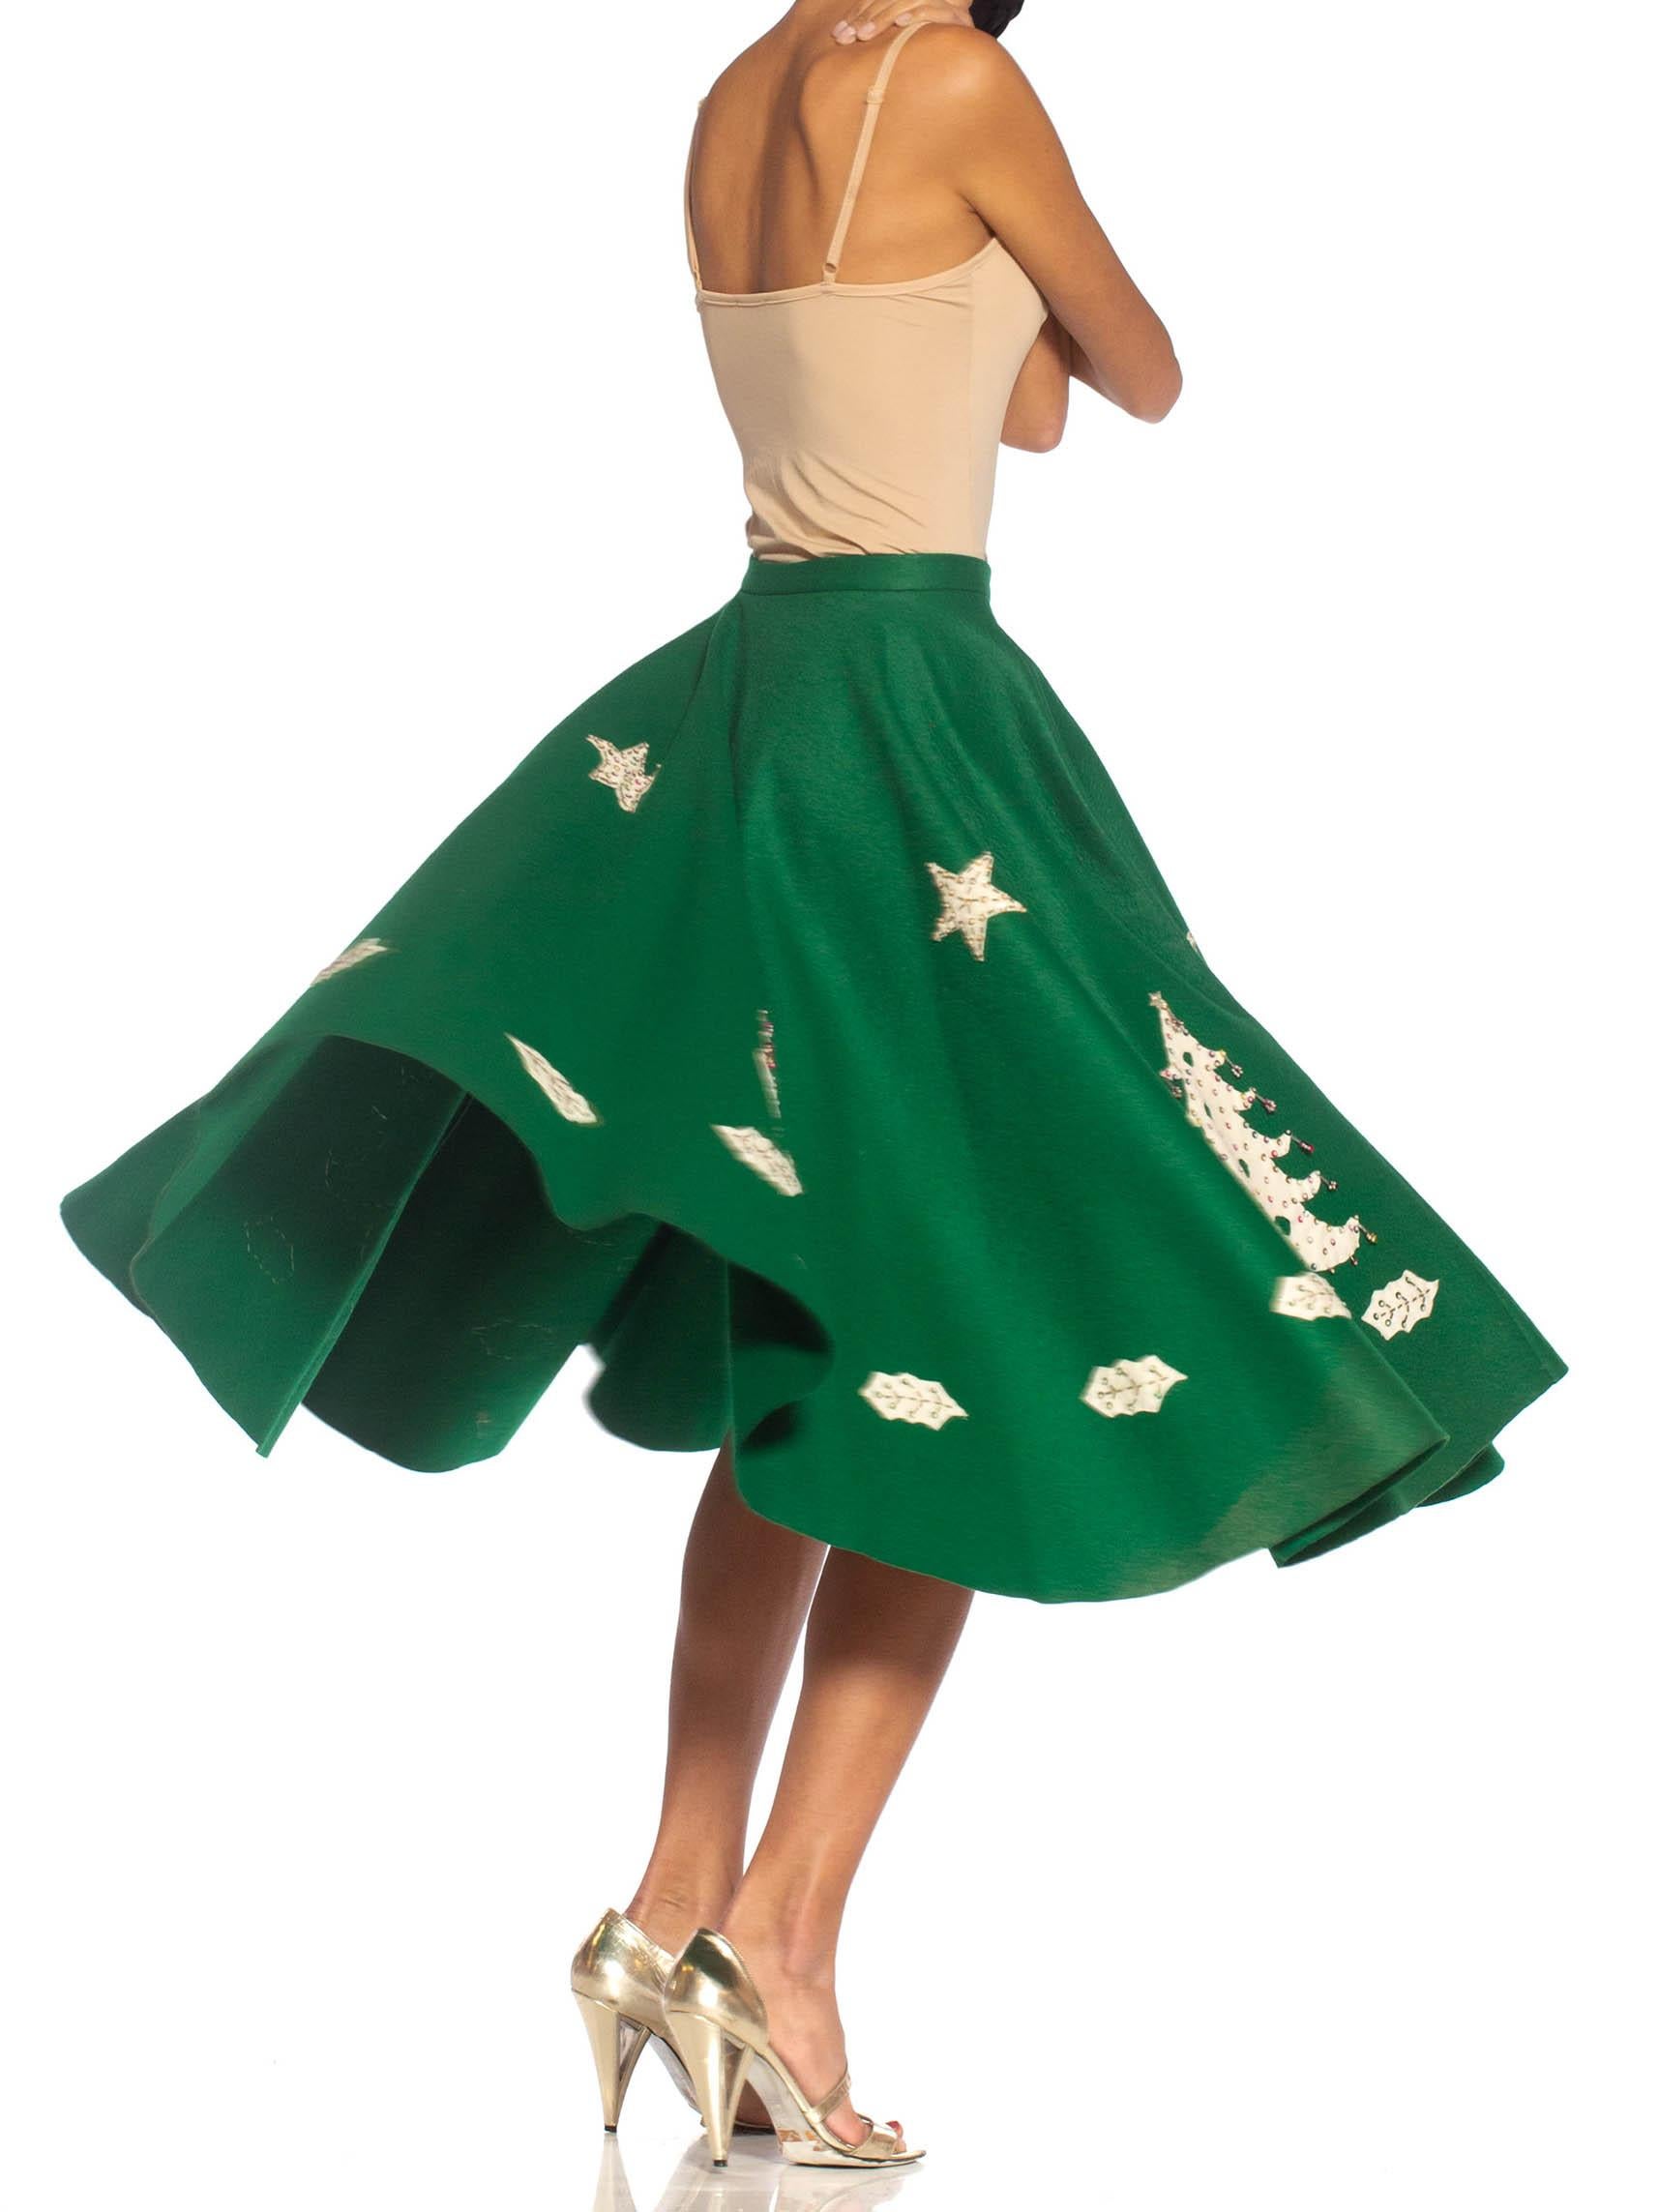 green felt skirt